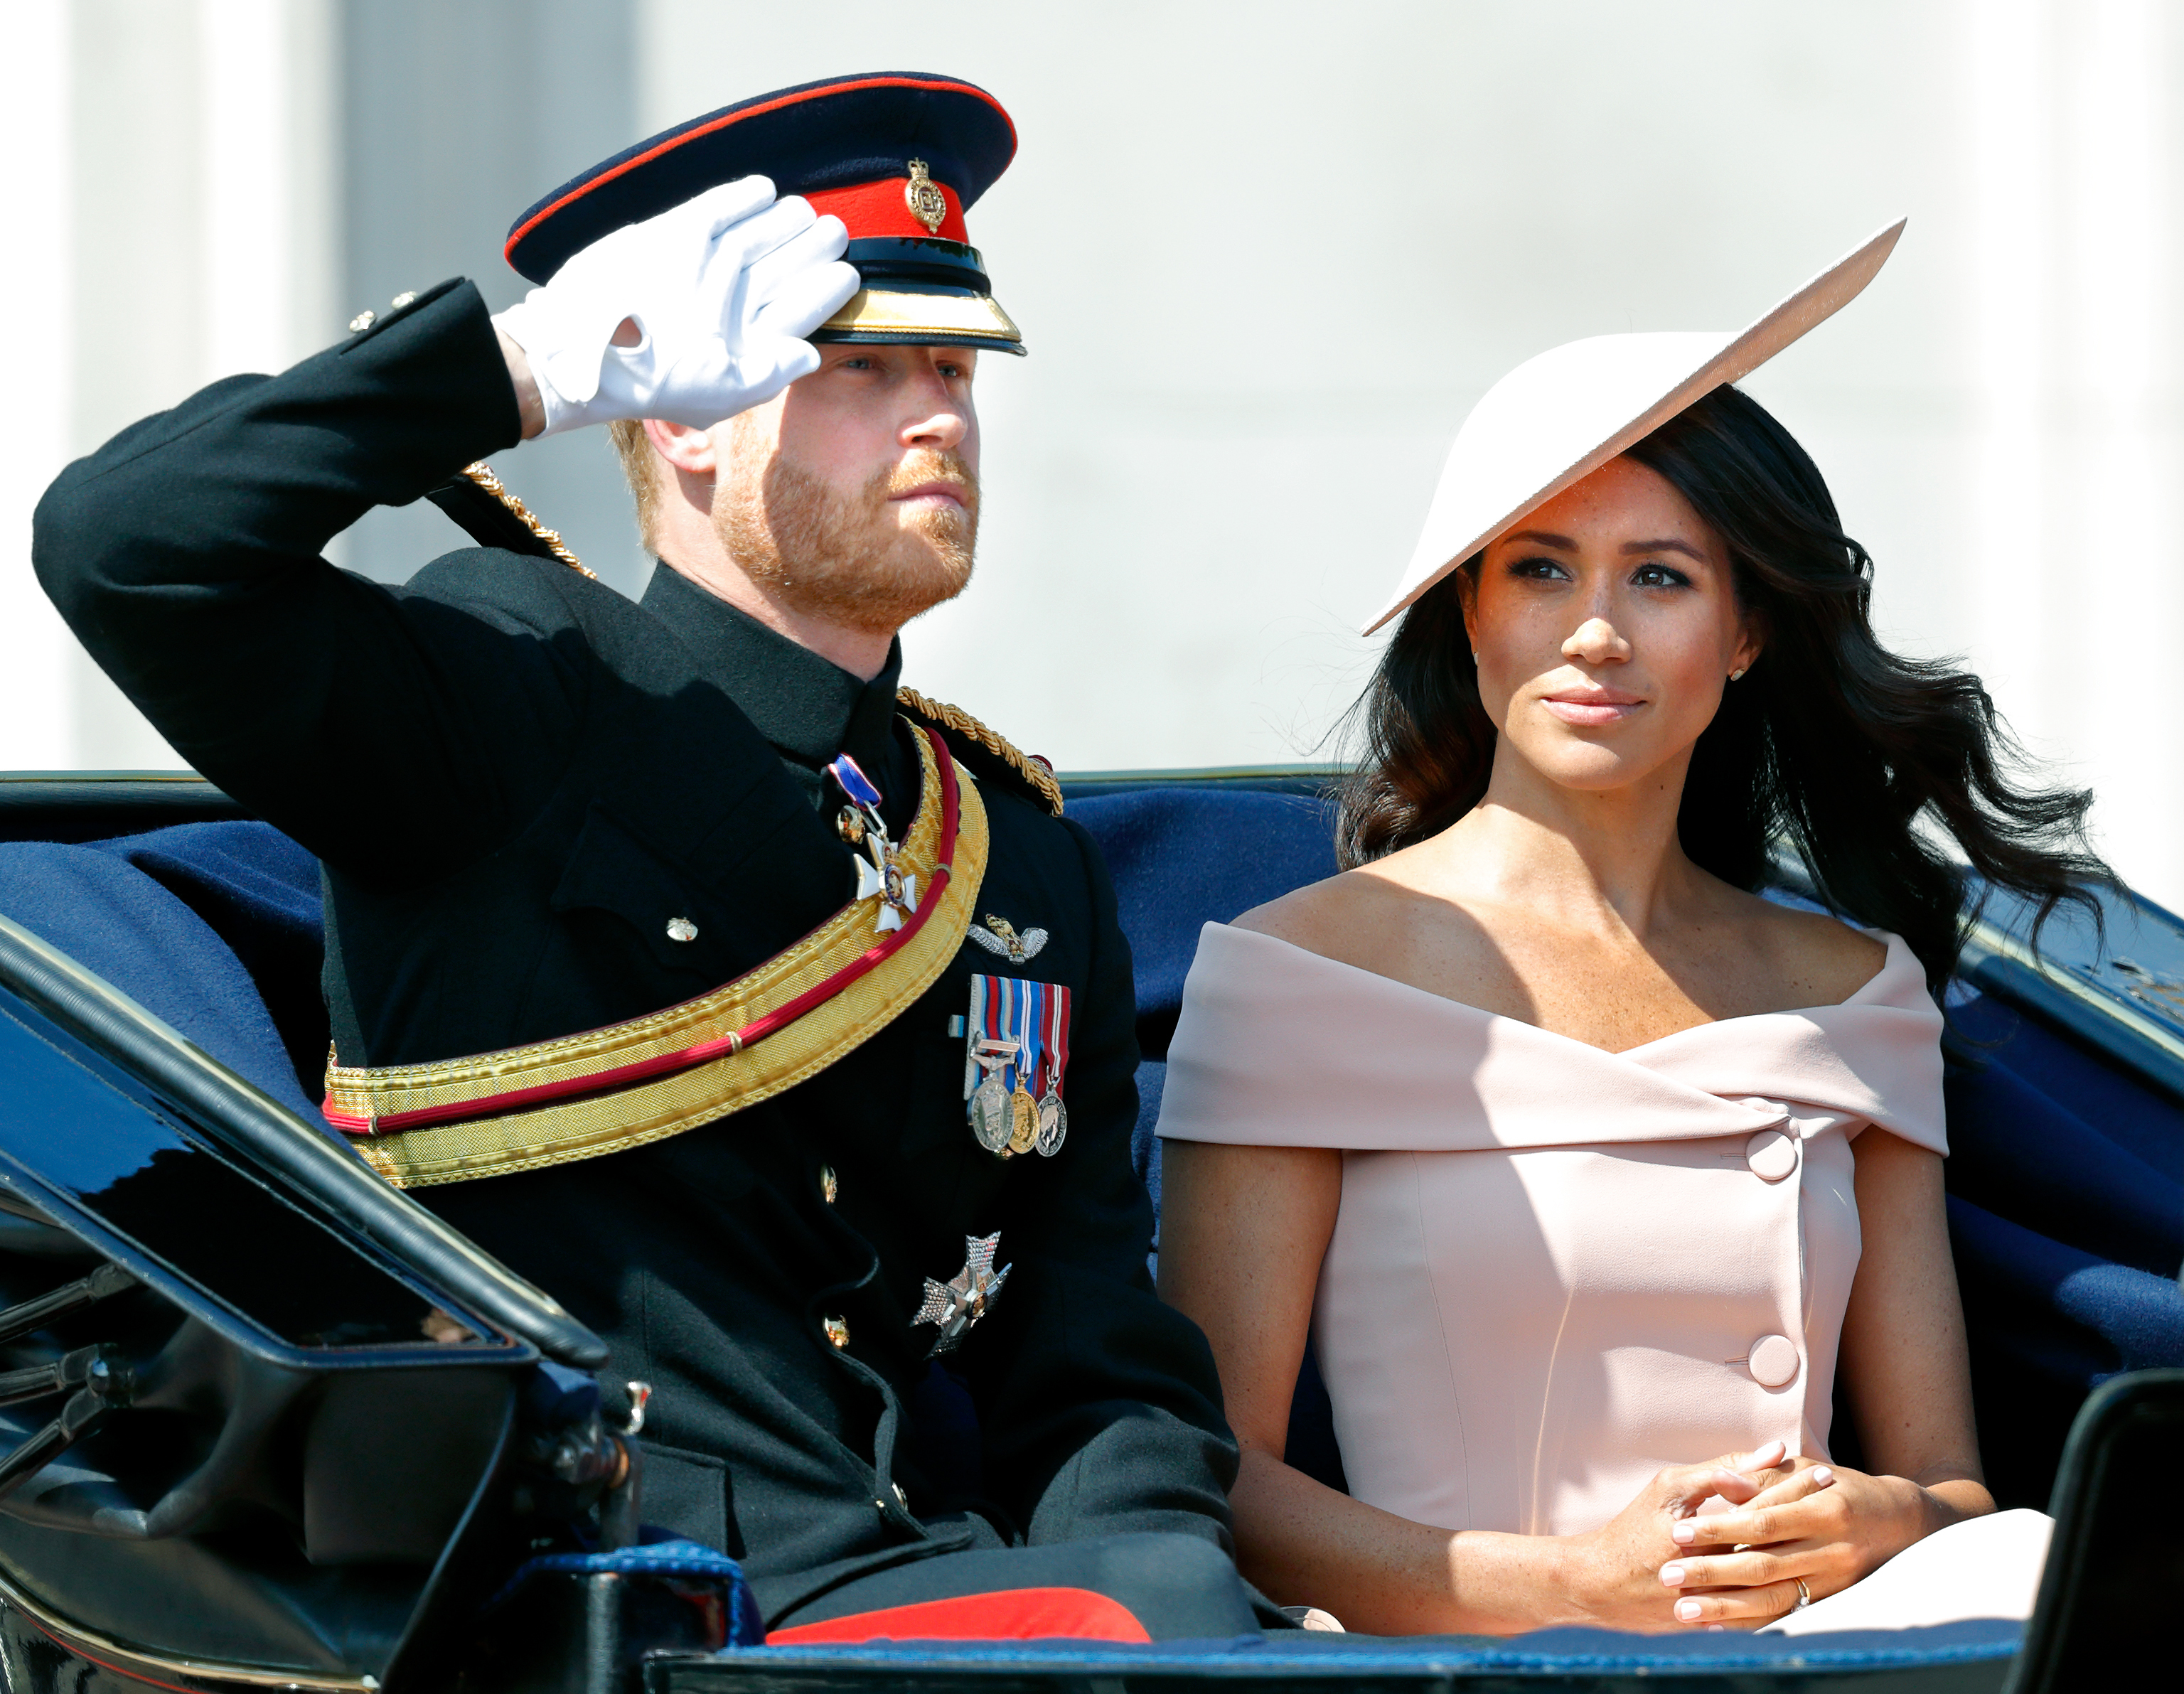 Le duc en 2018 a enfilé des vêtements militaires et salué la foule alors que son épouse Meg était assise à côté de lui.